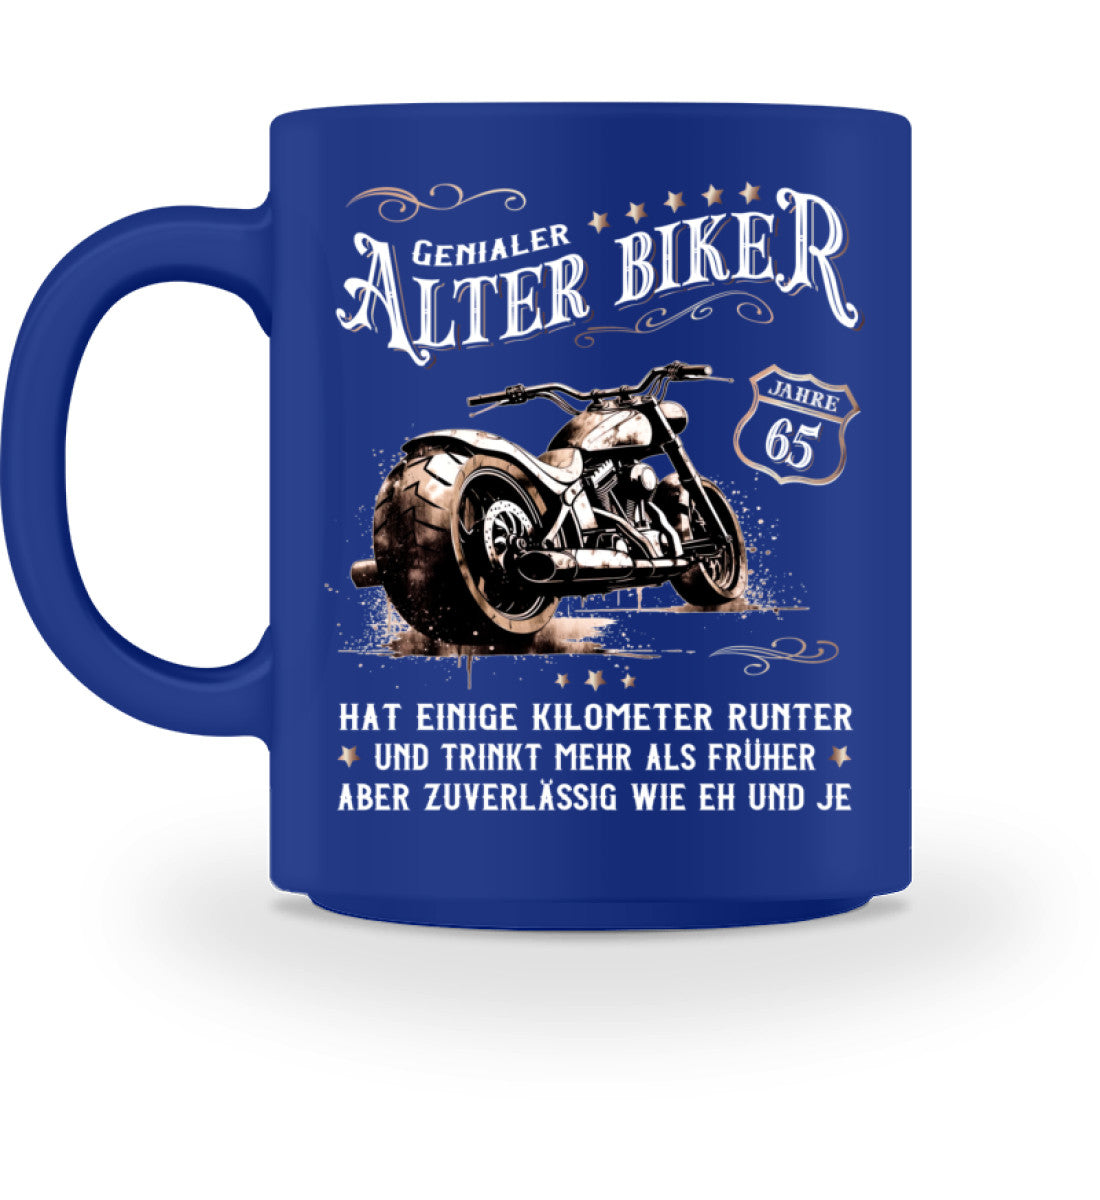 Eine Biker Geburtstags-Tasse für Motorradfahrer, von Wingbikers, mit dem beidseitigen Aufdruck, Alter Biker - 65 Jahre - Einige Kilometer runter, trinkt mehr - aber zuverlässig wie eh und je, in blau.